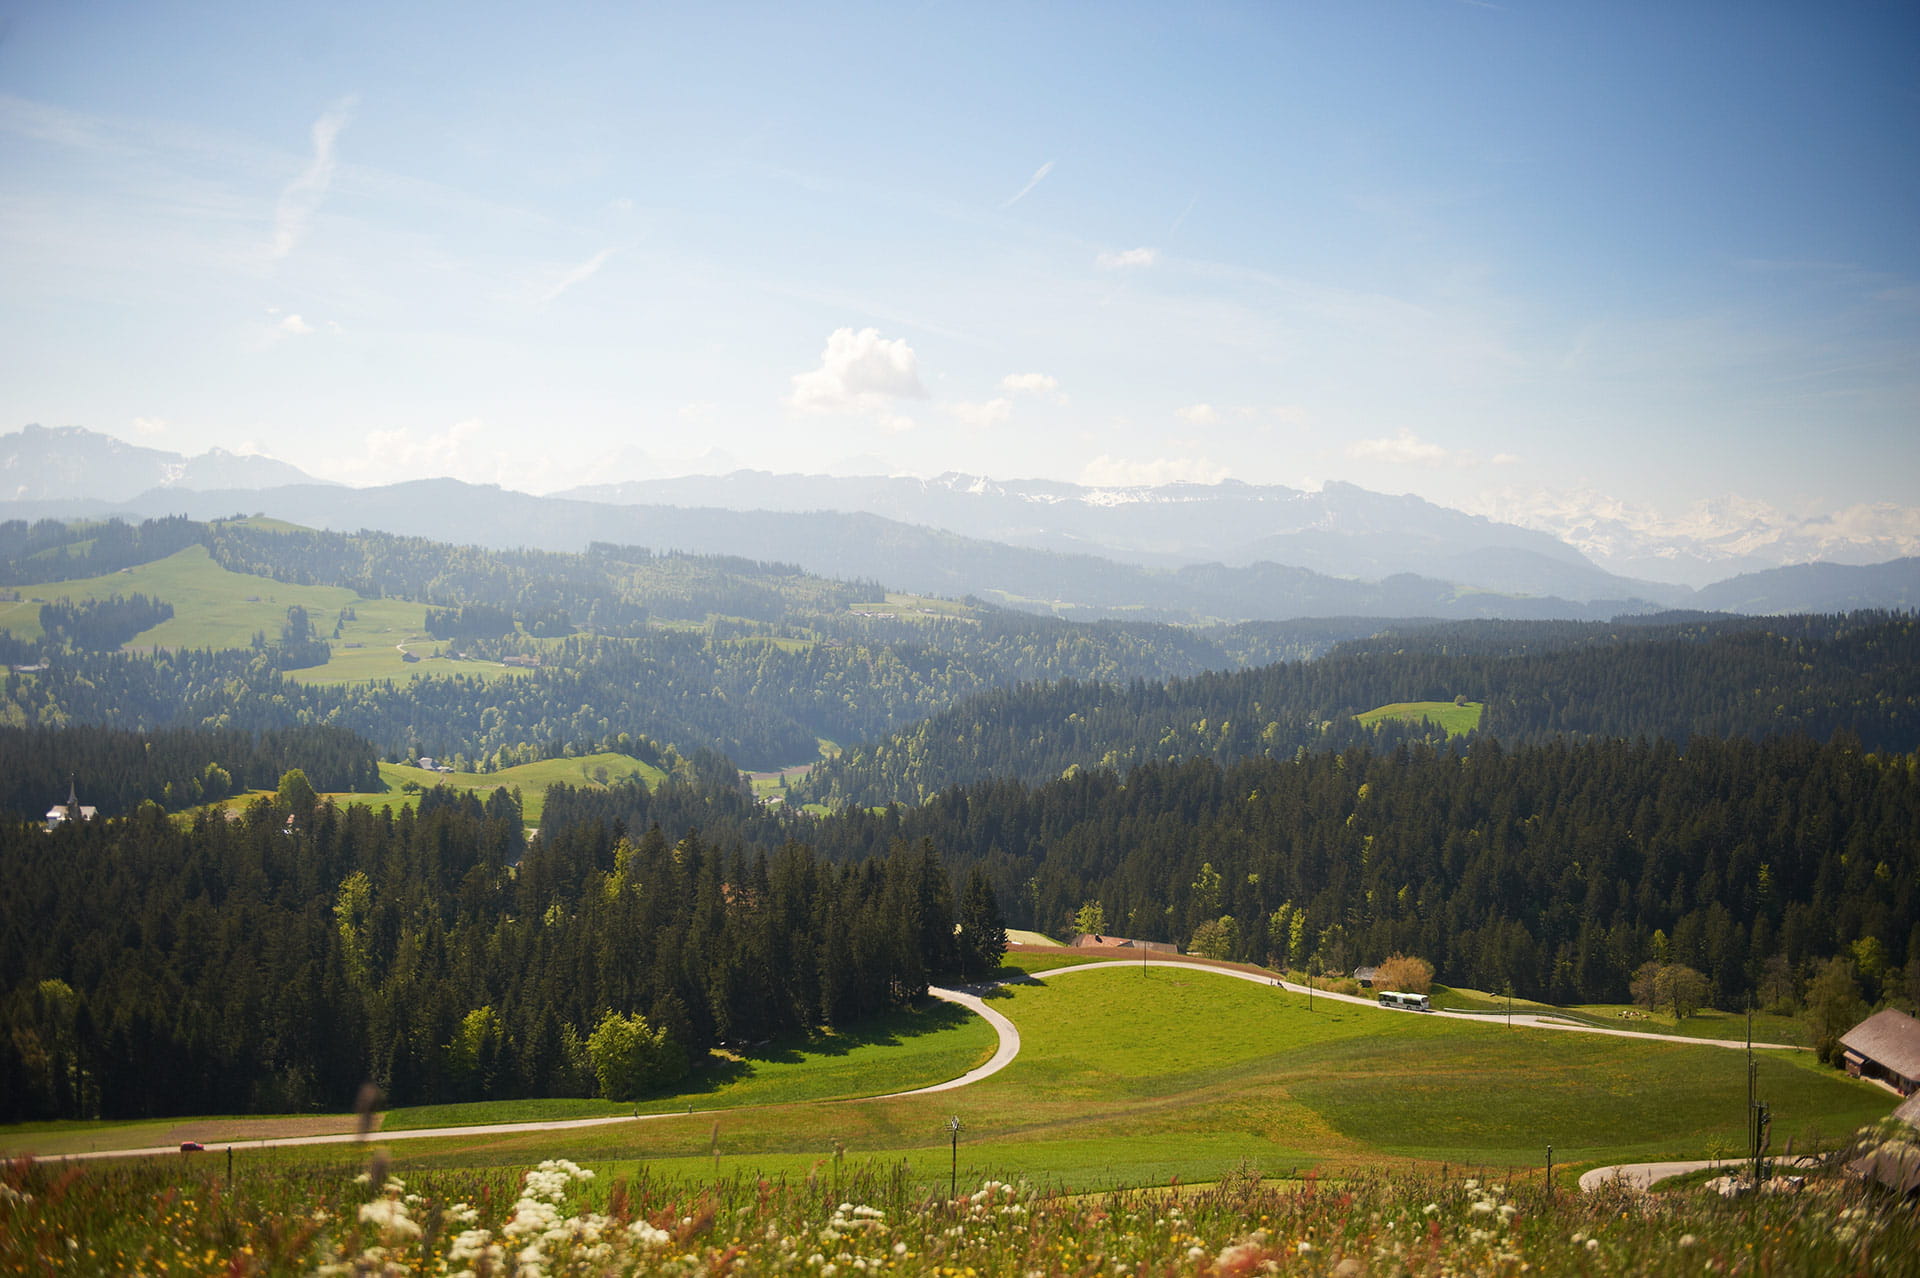 Über einen kleinen Pfad gelangen Sie zum 42 m hohen Aussichtsturm Chuderhüsi, welcher Ihnen eine der schönsten Aussichten im Bernbiet vom Schwarzwald bis zu den Berner Alpen bietet.